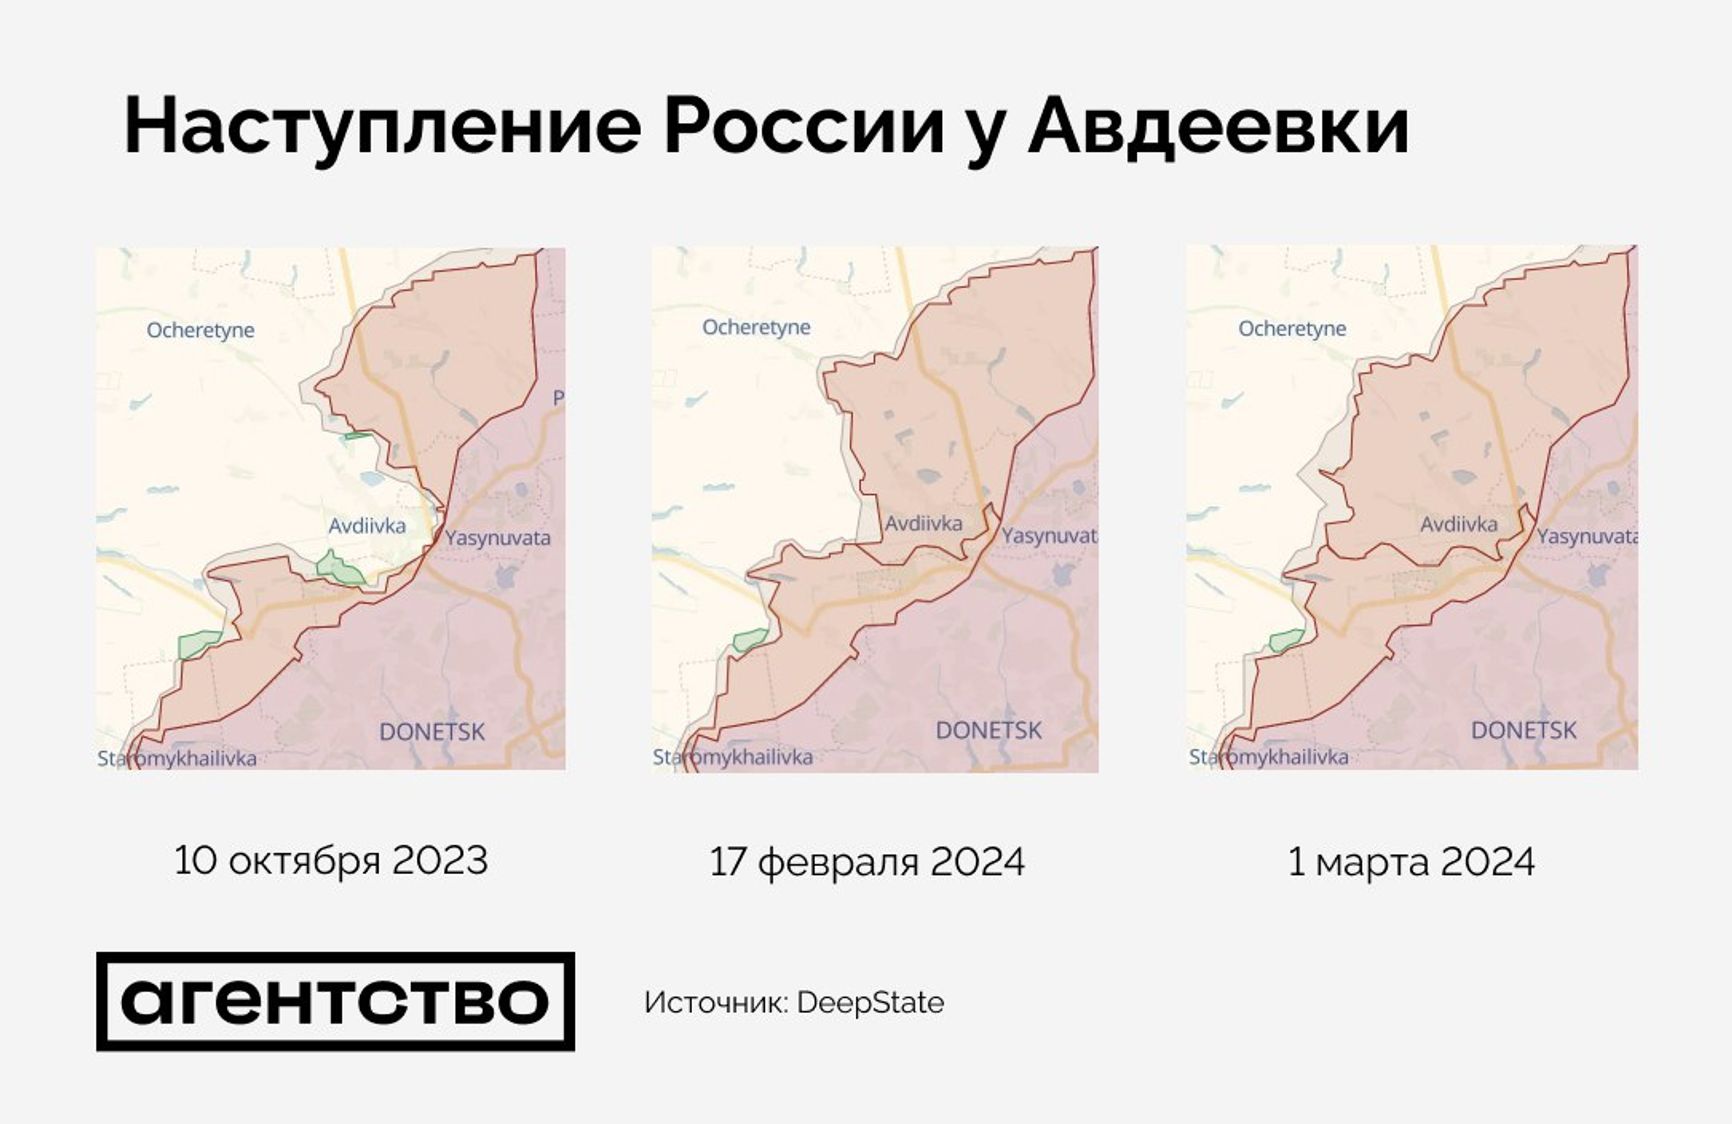 Наступление России у Авдеевки с 10 октября 2023 года по 1 марта 2024 года